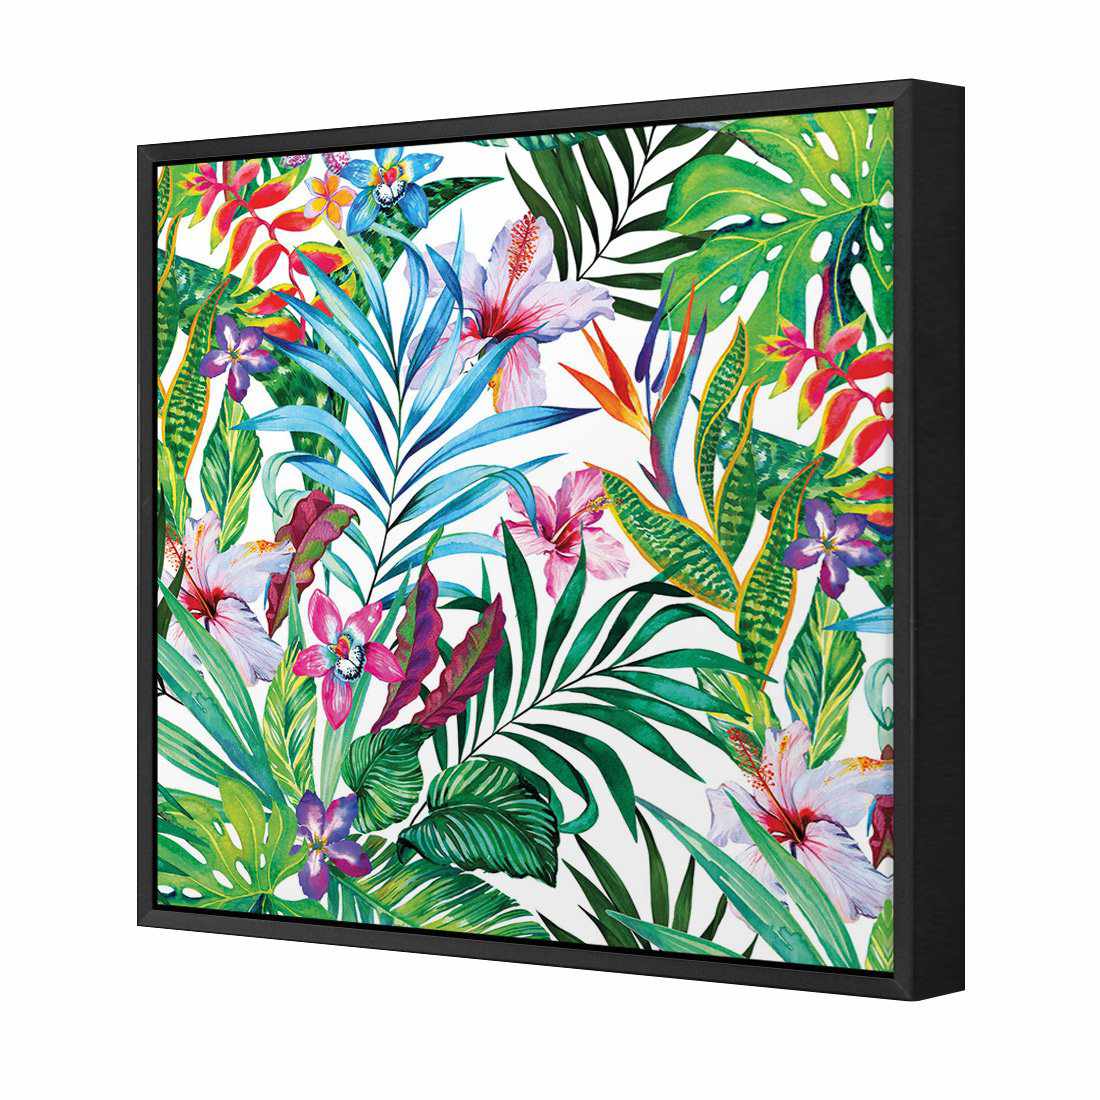 Jungle At Noon Canvas Art-Canvas-Wall Art Designs-30x30cm-Canvas - Black Frame-Wall Art Designs